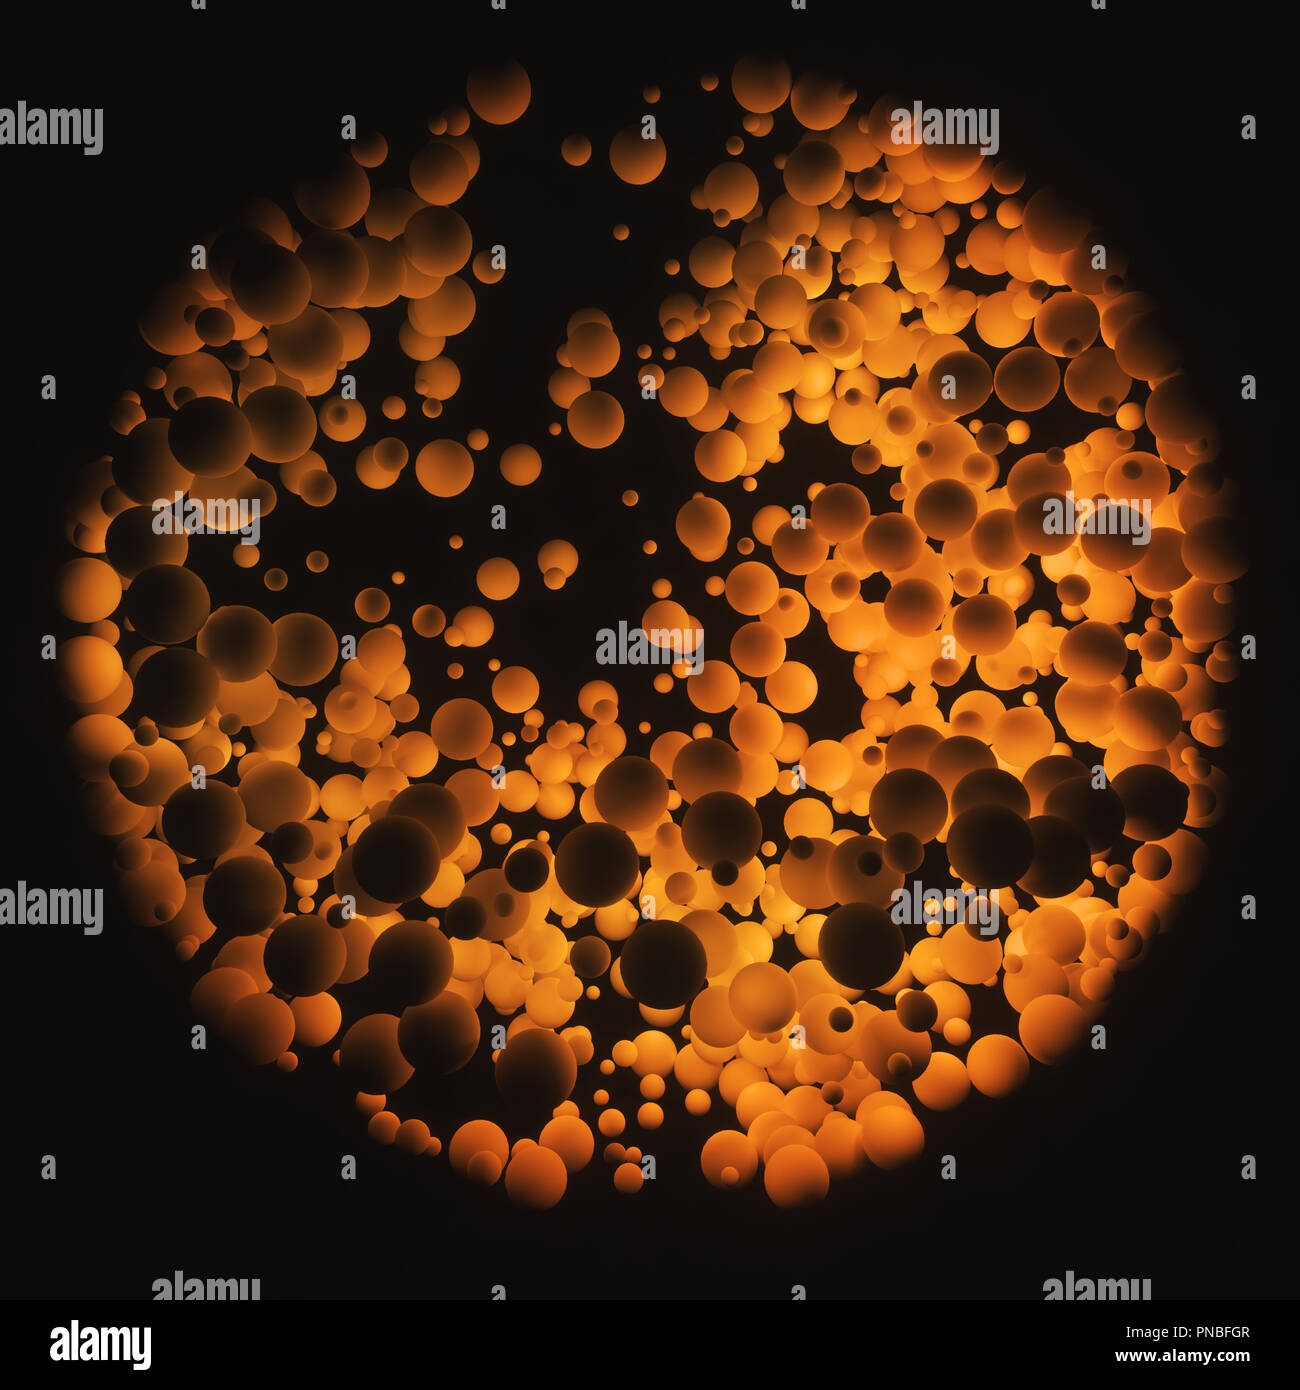 Image abstraite de sphères organiques dans le concept de l'origine et la multiplication de la vie. Banque D'Images